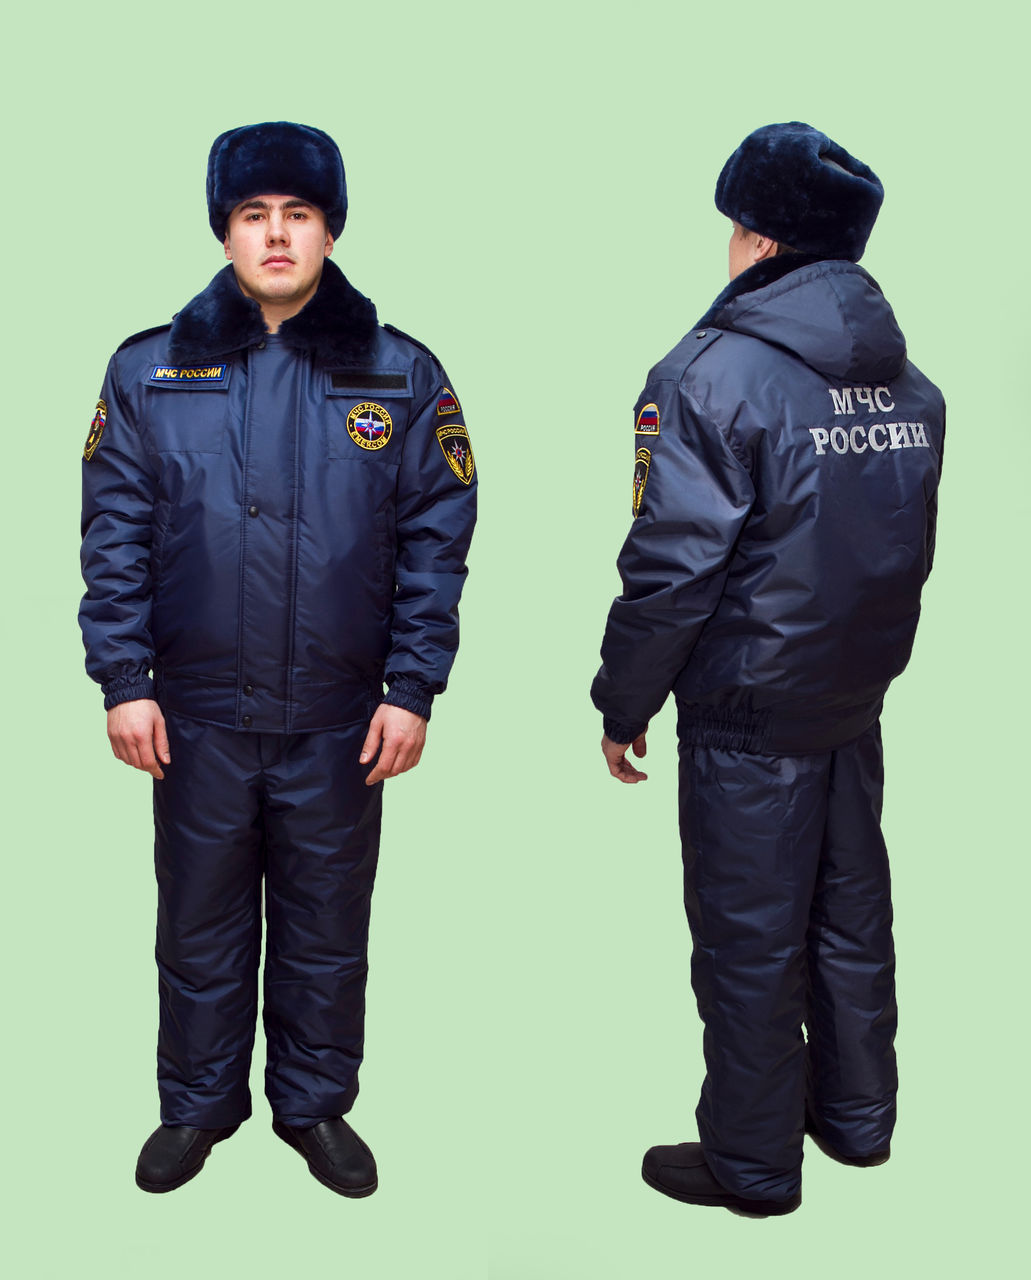 Новая куртка полиции